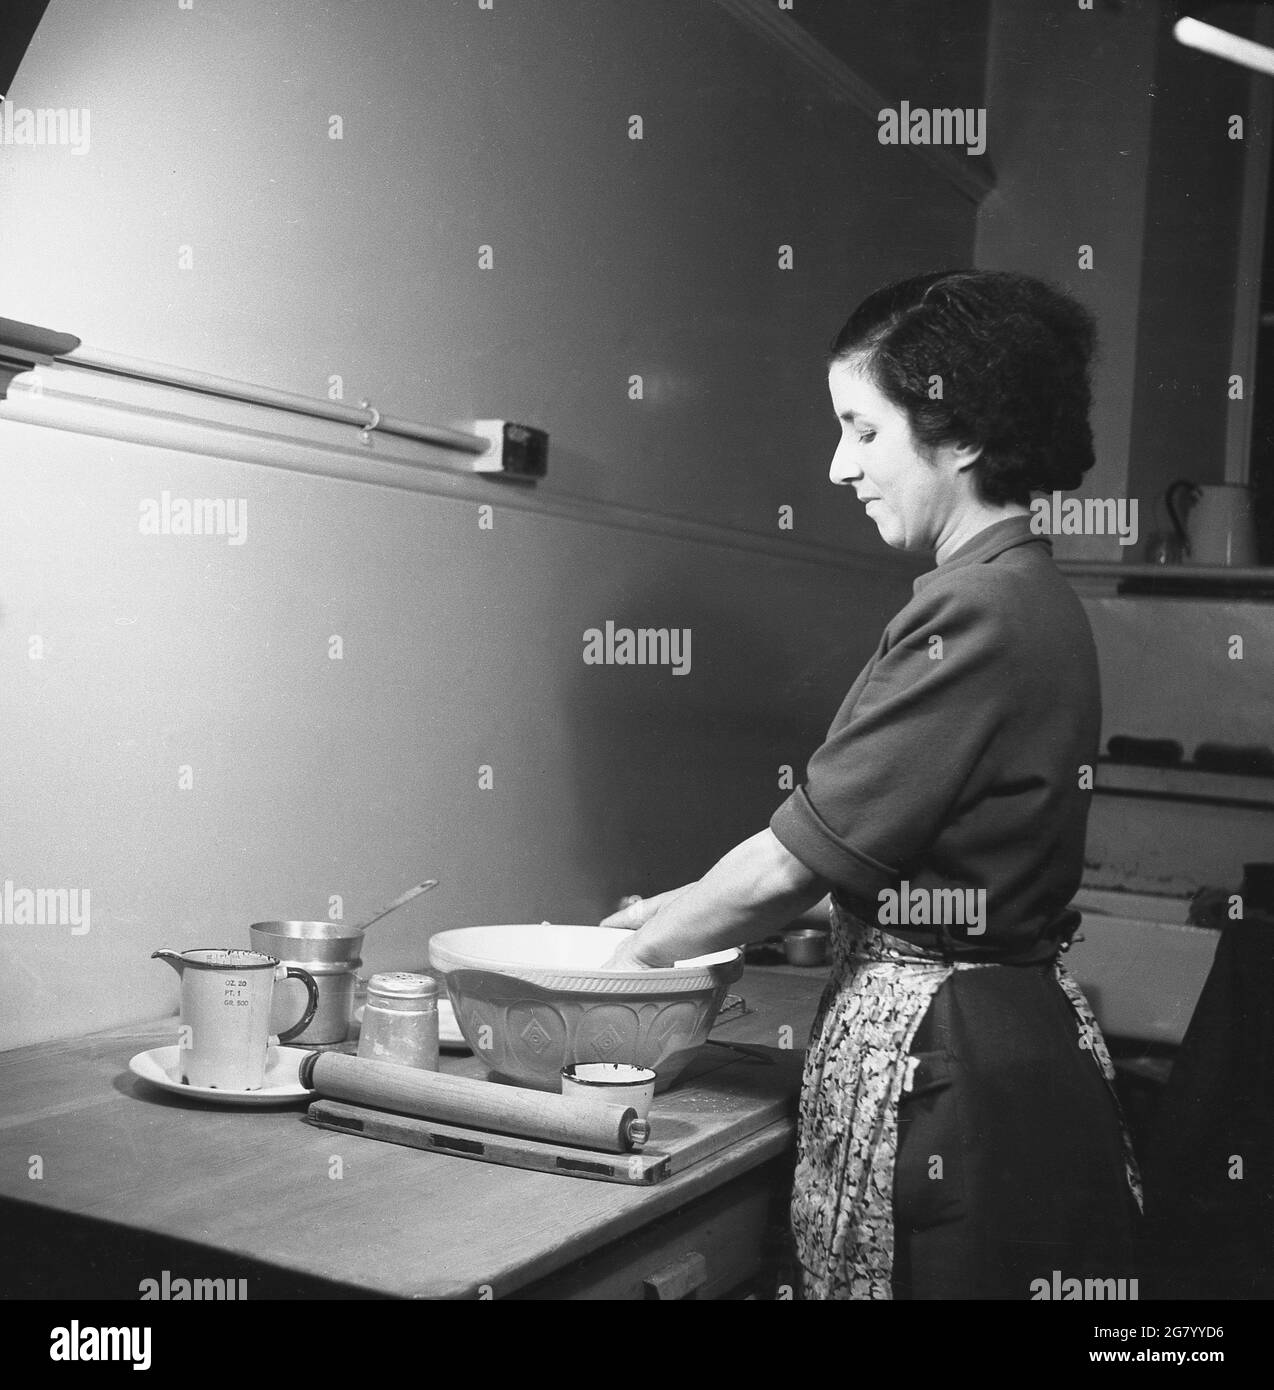 In den 1950er Jahren, historisch, eine Dame in einem Kleid mit einer Schürze, die an einem Holztisch in einer Ecke eines Raumes steht, der Teig in einer Mehlschüssel auf einem hölzernen Gebäckbrett mischt. Mit ihrem Nudelholz neben ihr und wenn sie Teig bereit ist, ist sie bereit, etwas zu backen, England, Großbritannien. Stockfoto